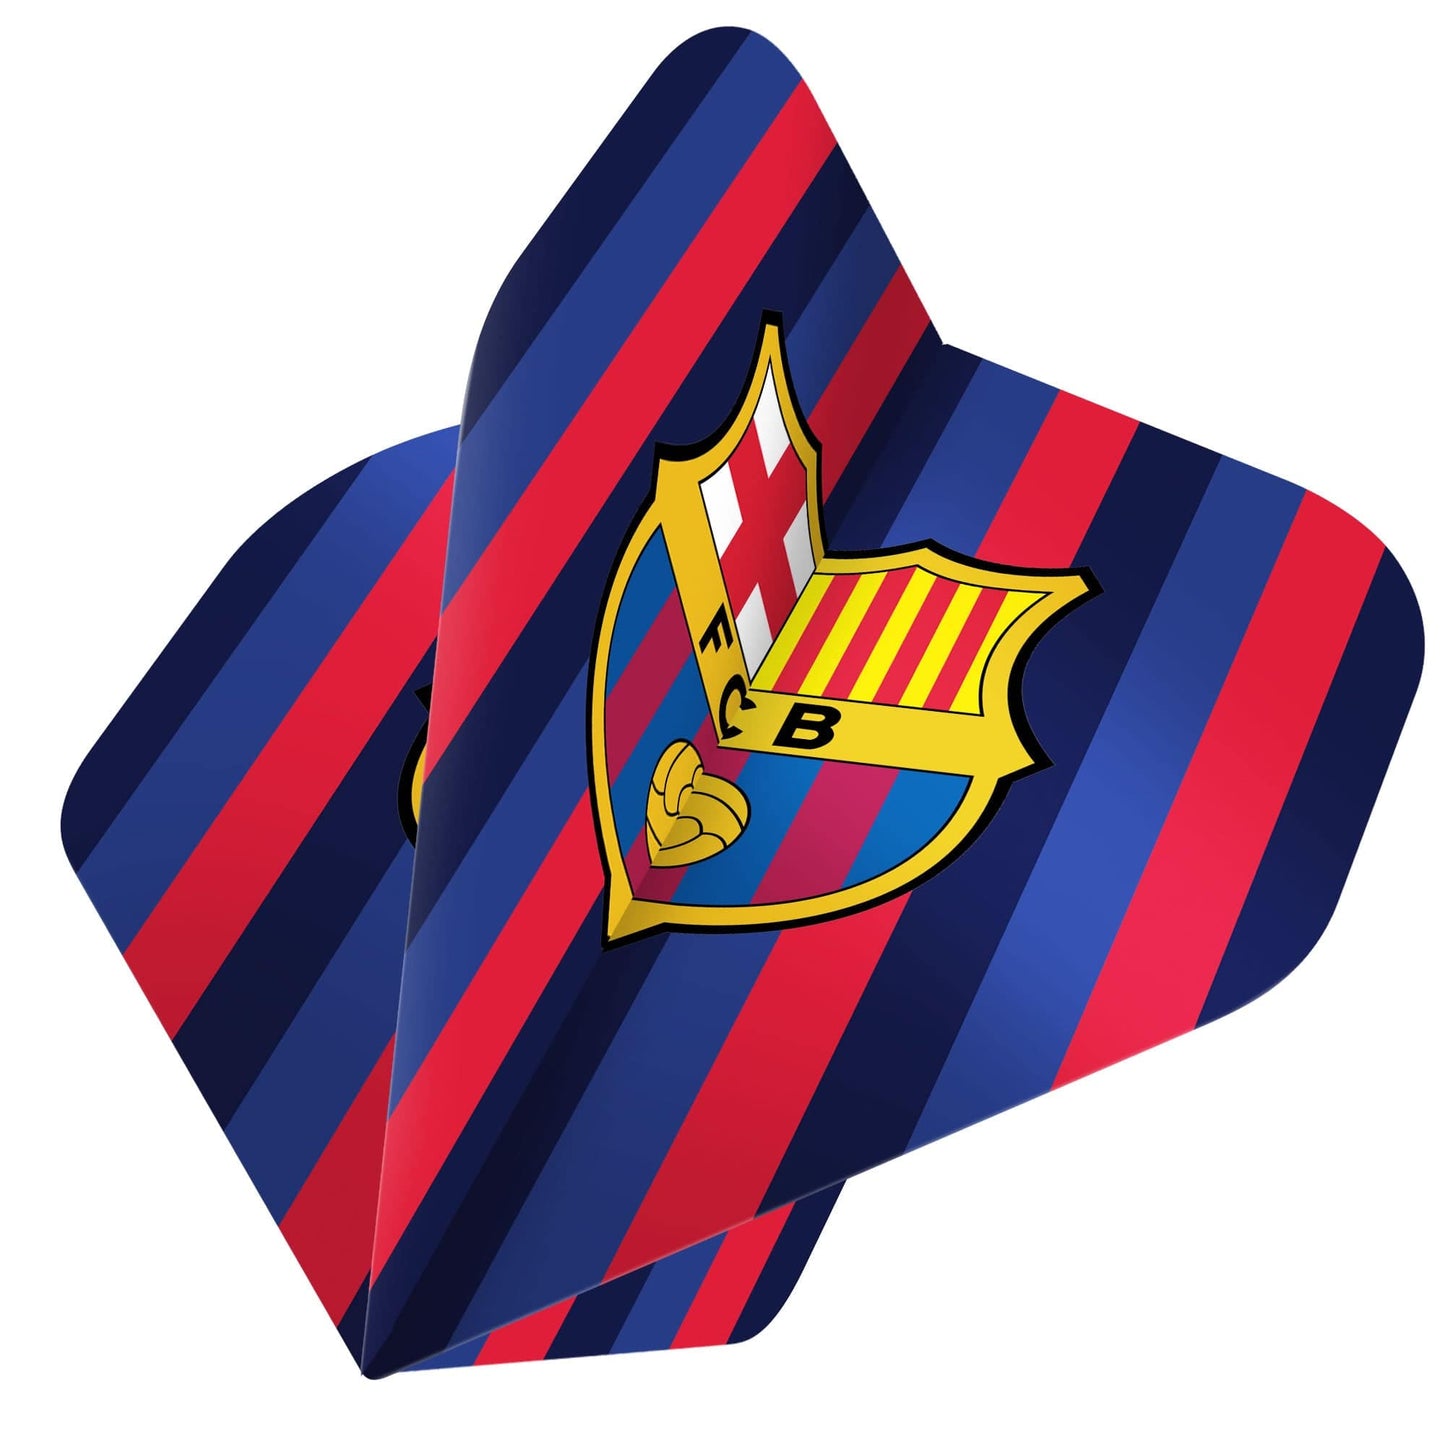 Barcelona FC Darts Gift Set - Steel Tip